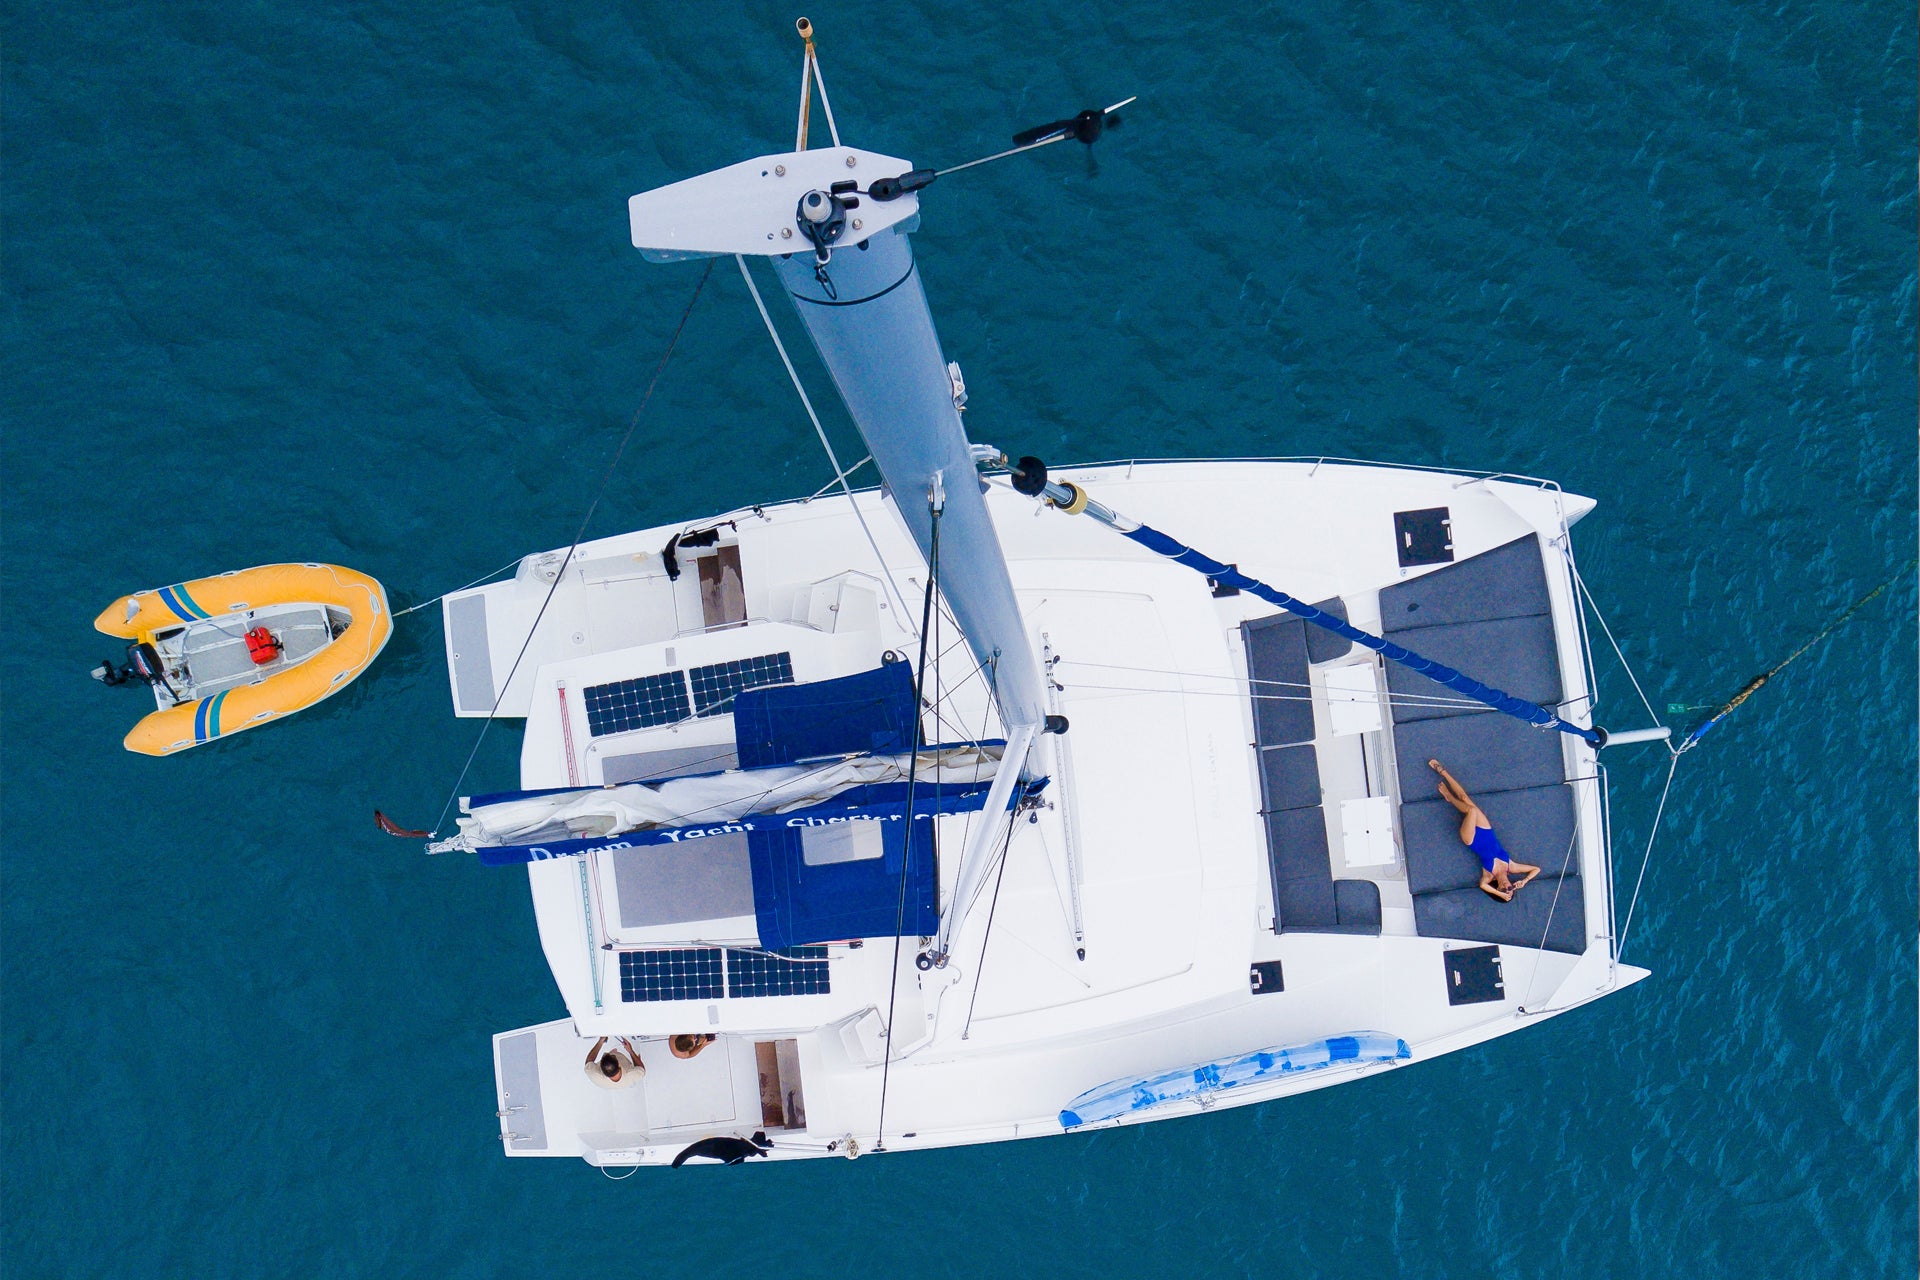 Amerika's catamaran charter zeilen in de blauwe zee